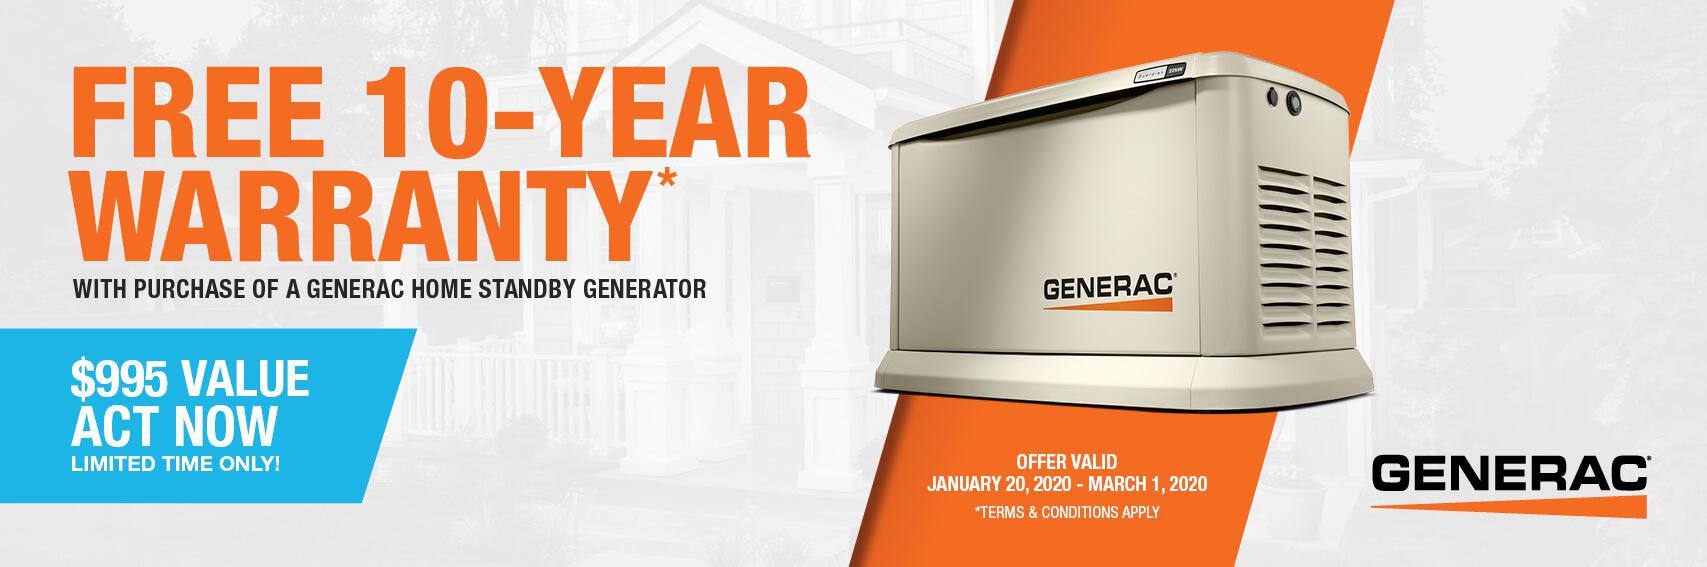 Homestandby Generator Deal | Warranty Offer | Generac Dealer | Longwood, FL